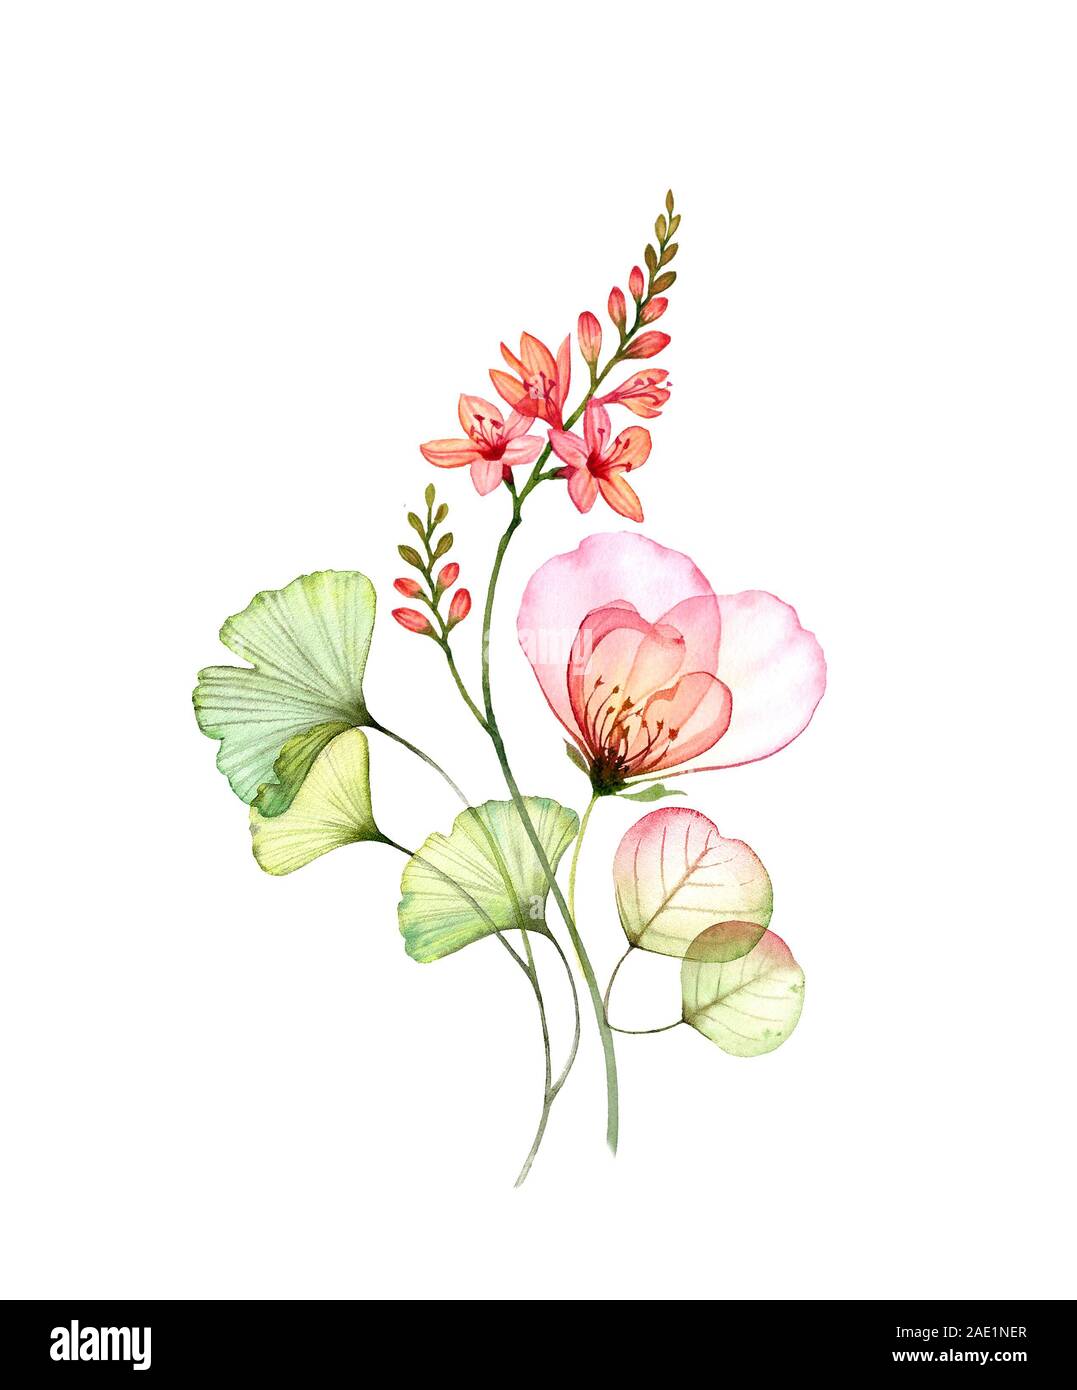 Aquarelle rose transparent et de freesia fleurs bouquet. Composition  florale colorée isolé sur blanc. Fleurs de mariage d'illustration botanique  Photo Stock - Alamy